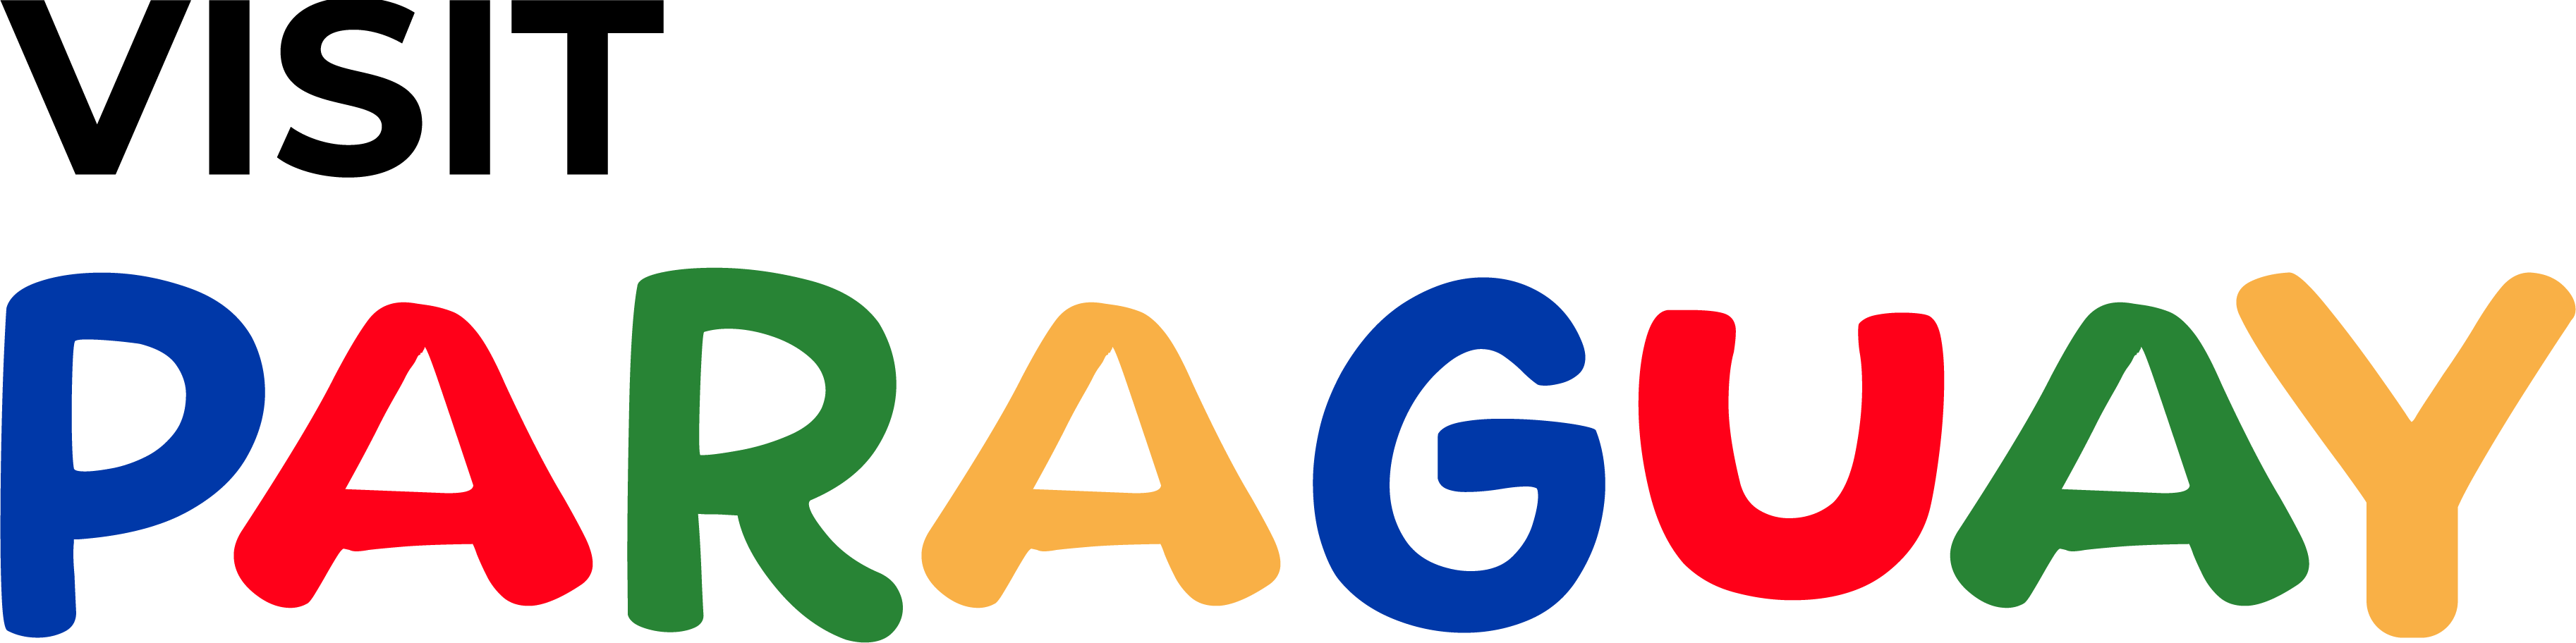 logo_senatur